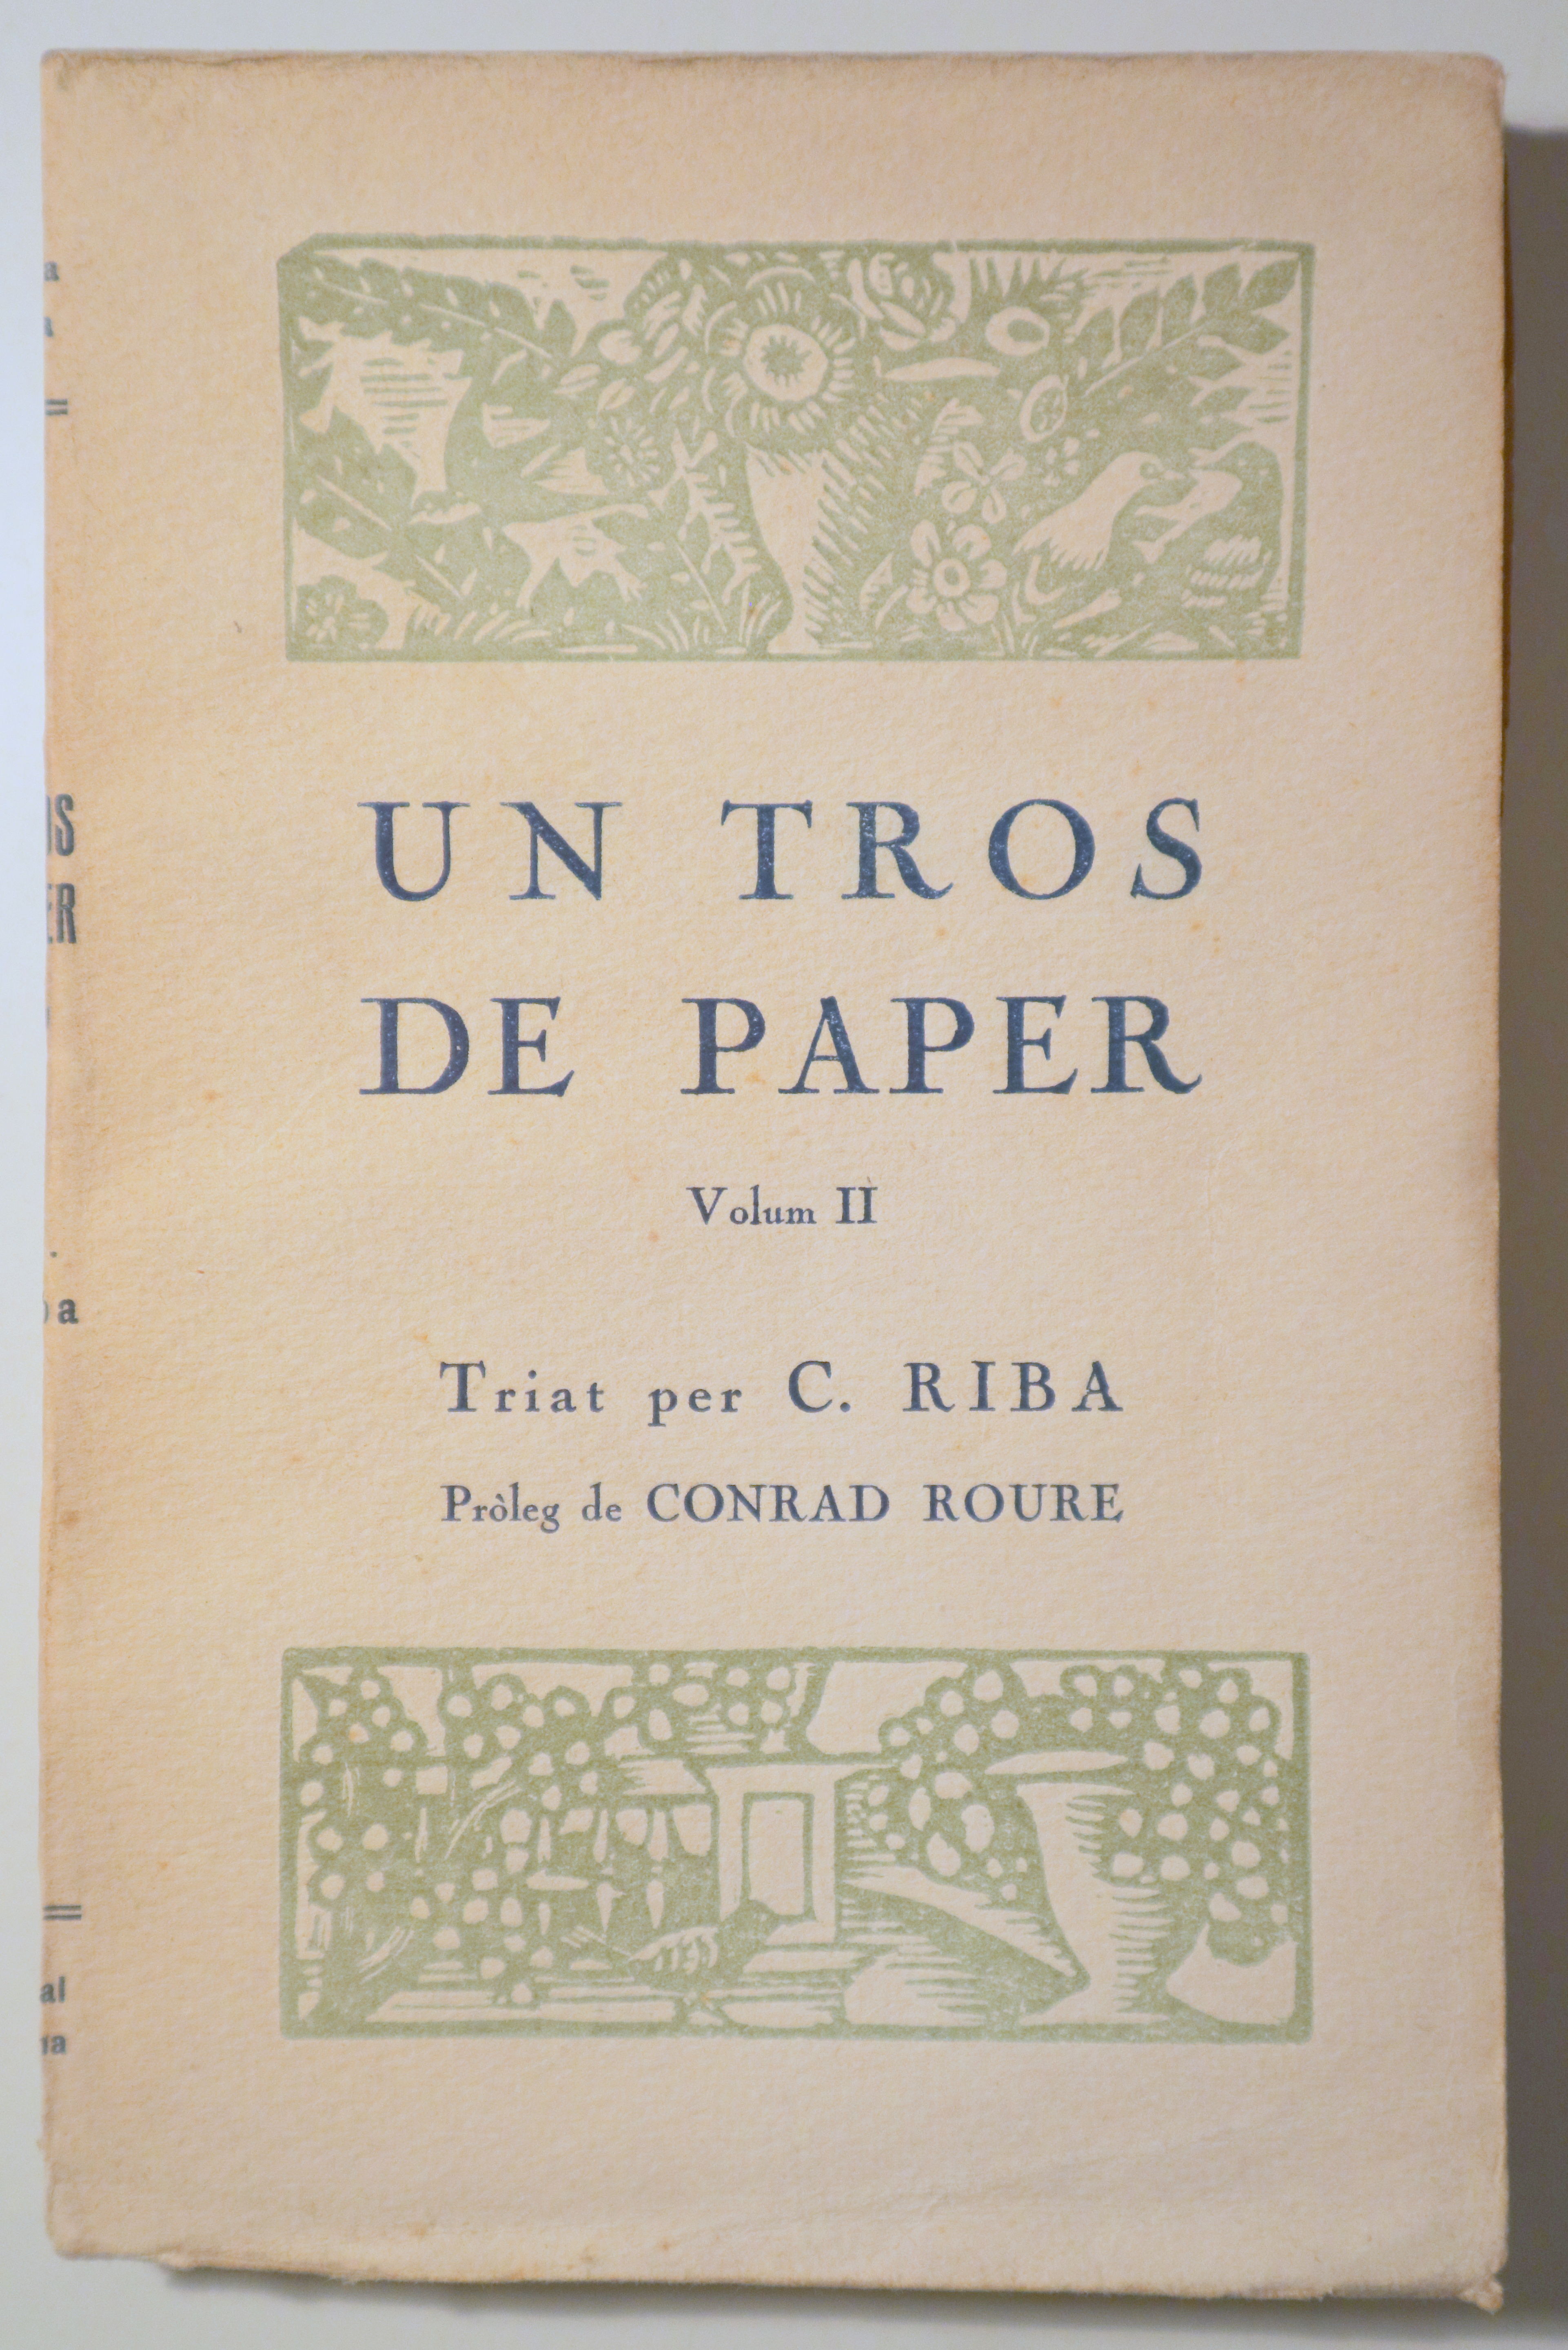 UN TROS DE PAPER. Vol. II - Barcelona 1920